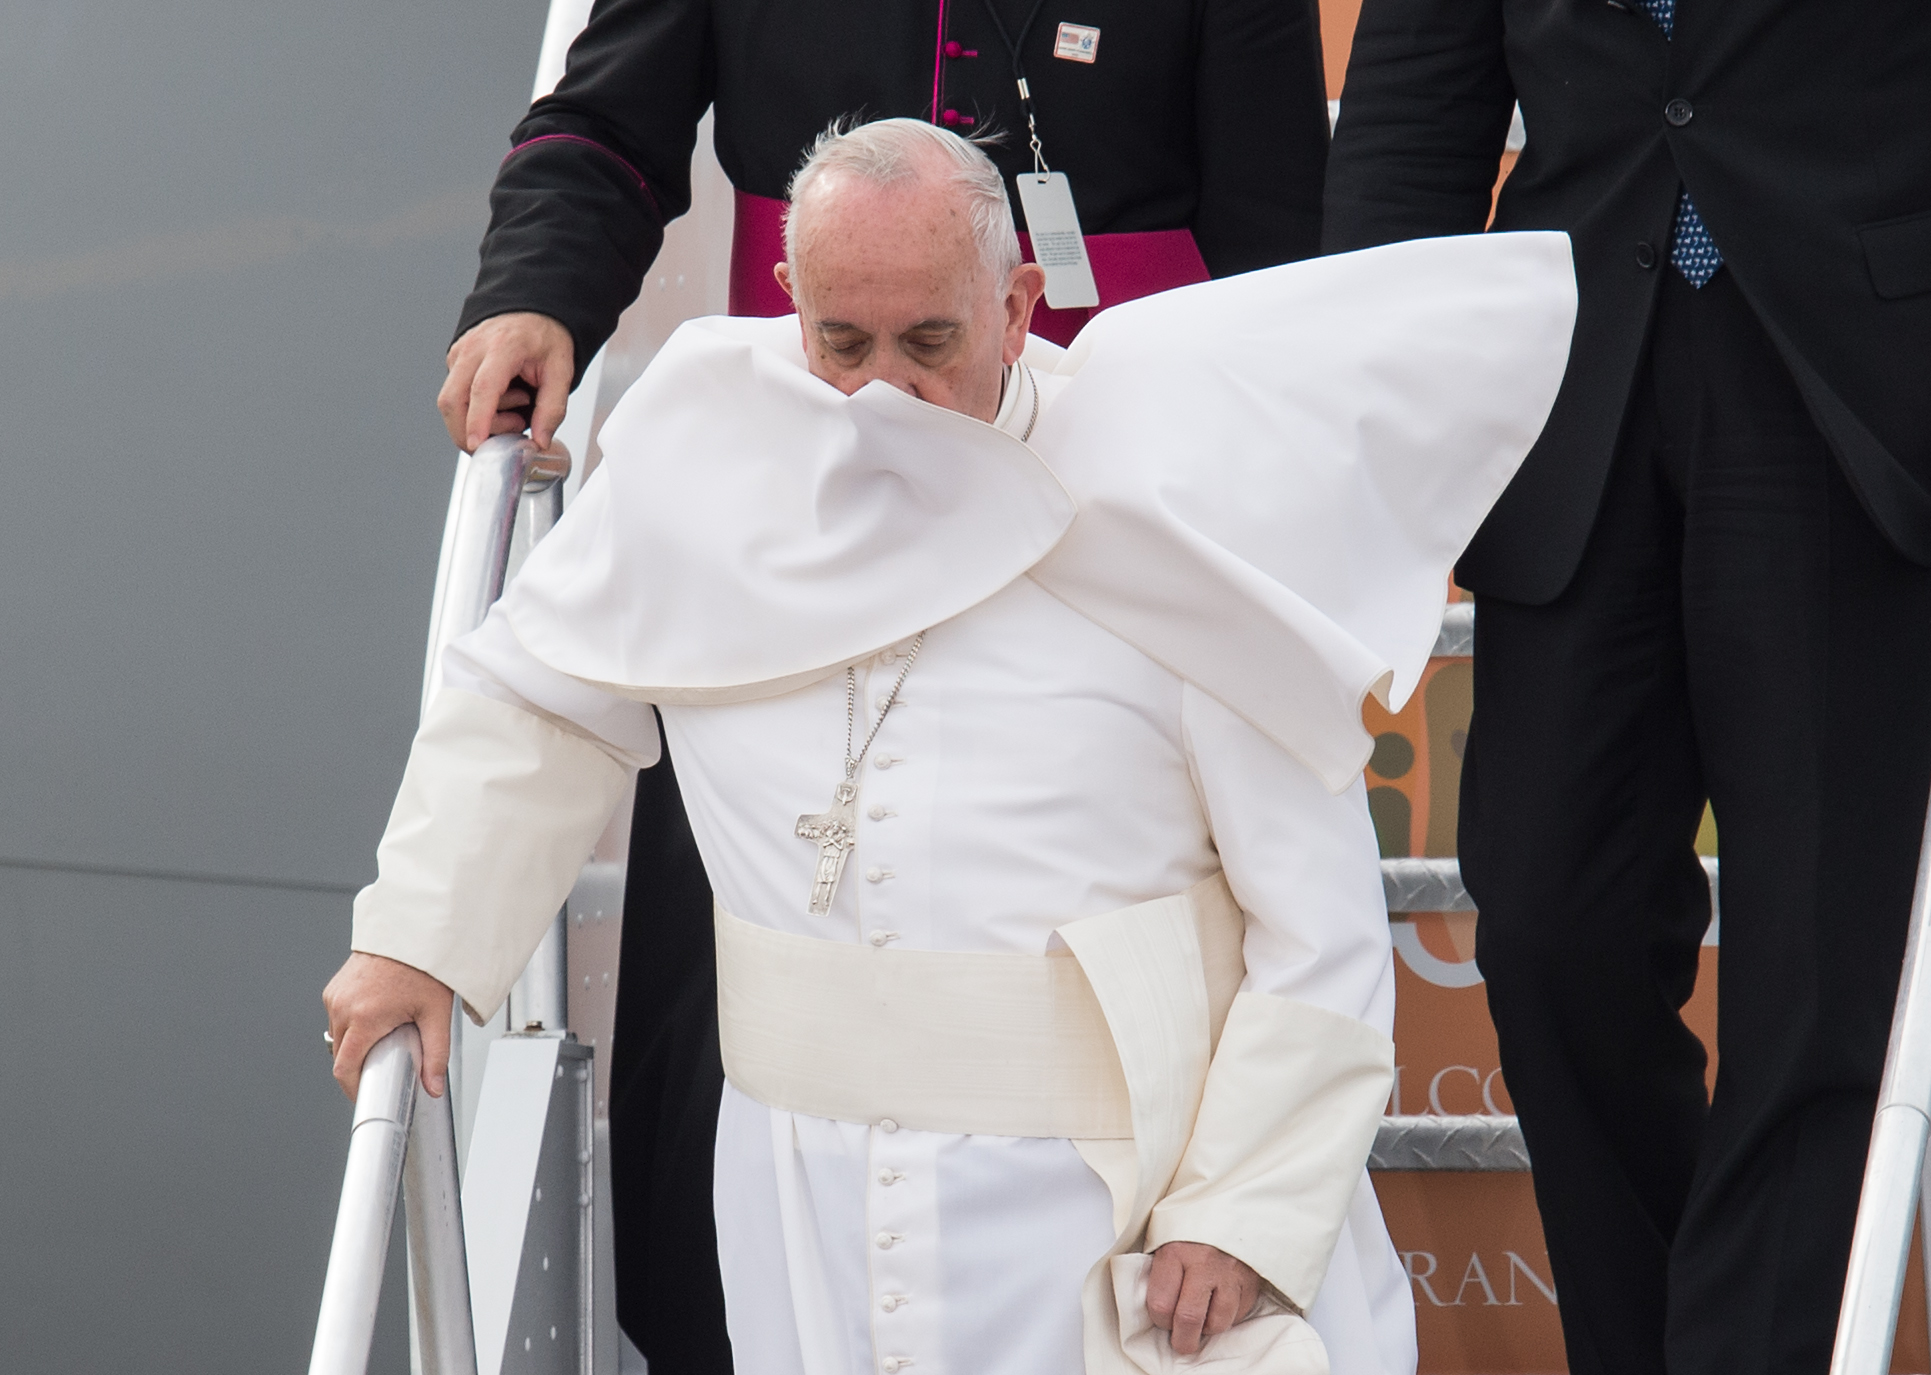 El Papa sufre de ciática y tiene problemas en una rodilla, por eso le cuesta subir y bajar escaleras